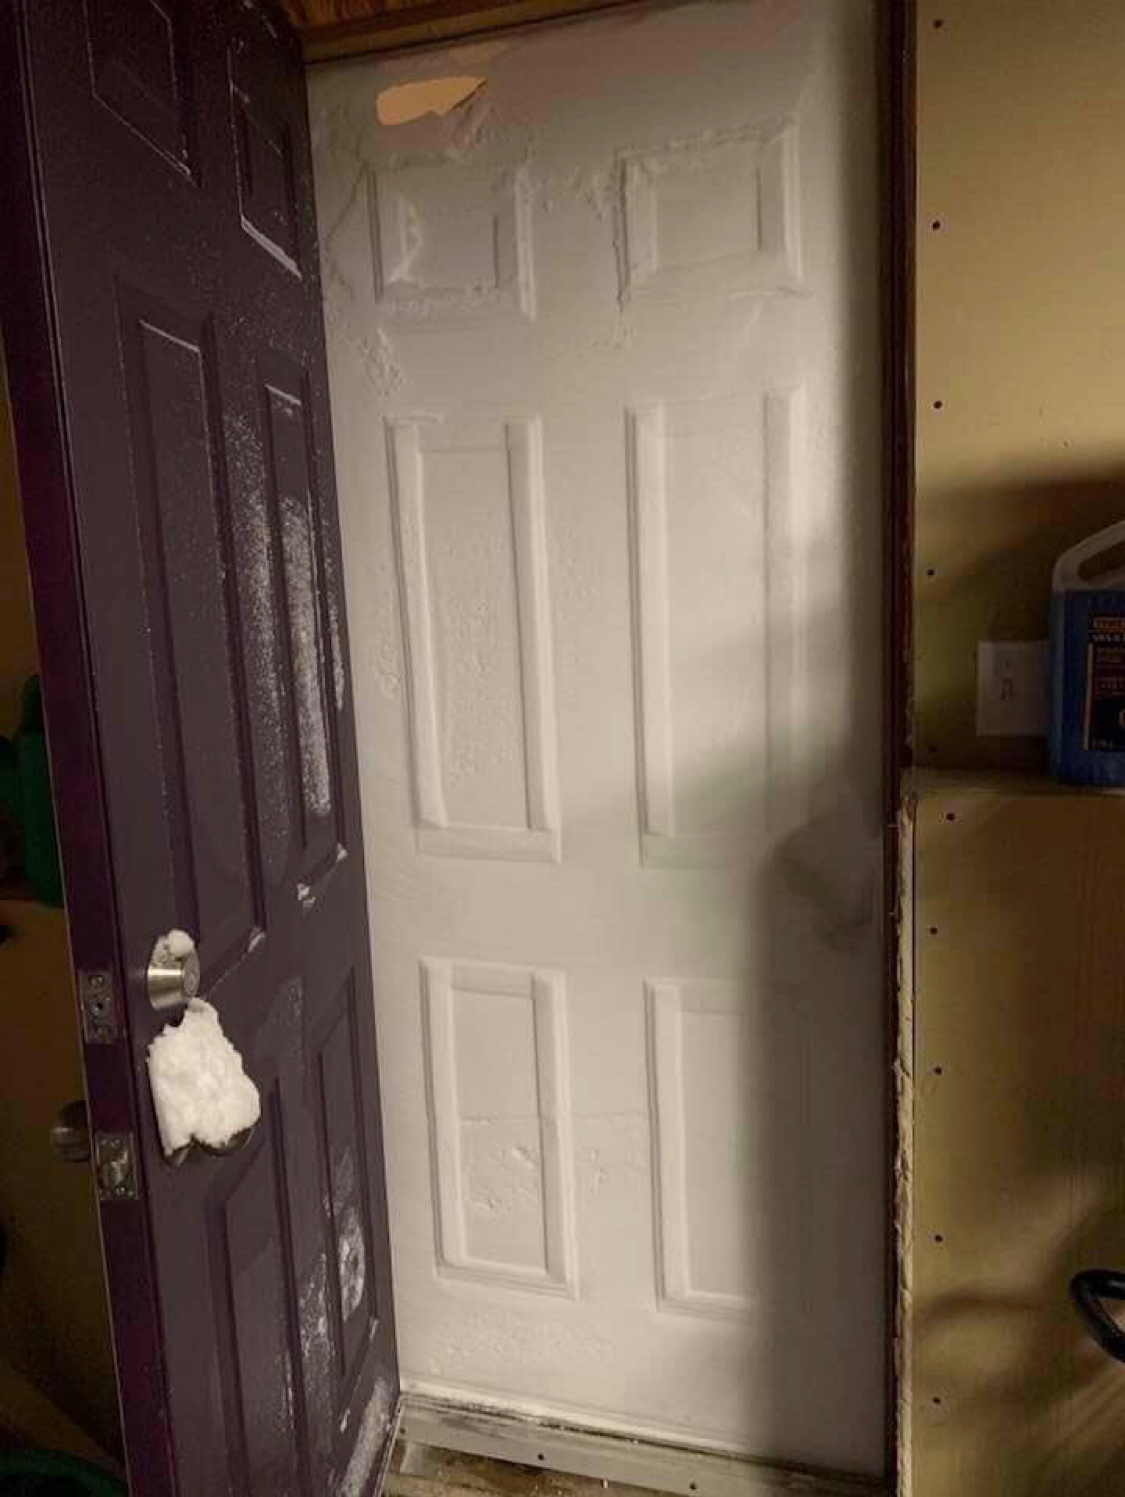 Morning in Canada - Snow, Canada, Door